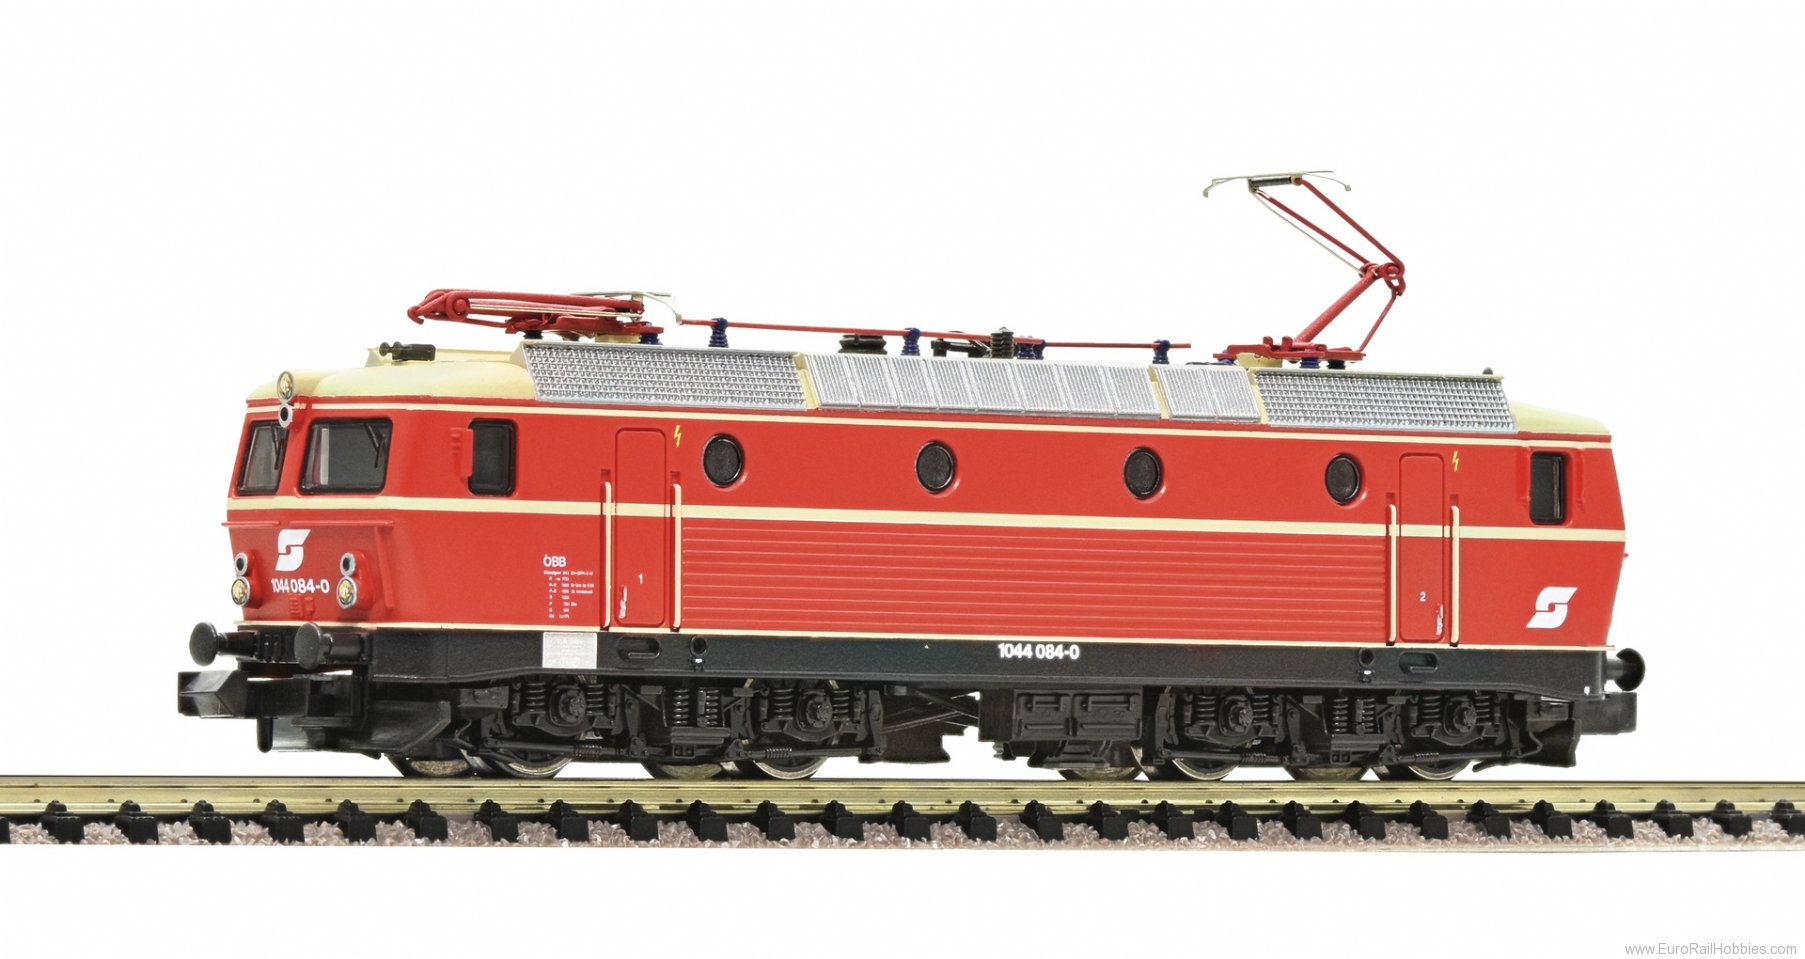 Fleischmann 736607 ÃBB Electric locomotive class 1044 